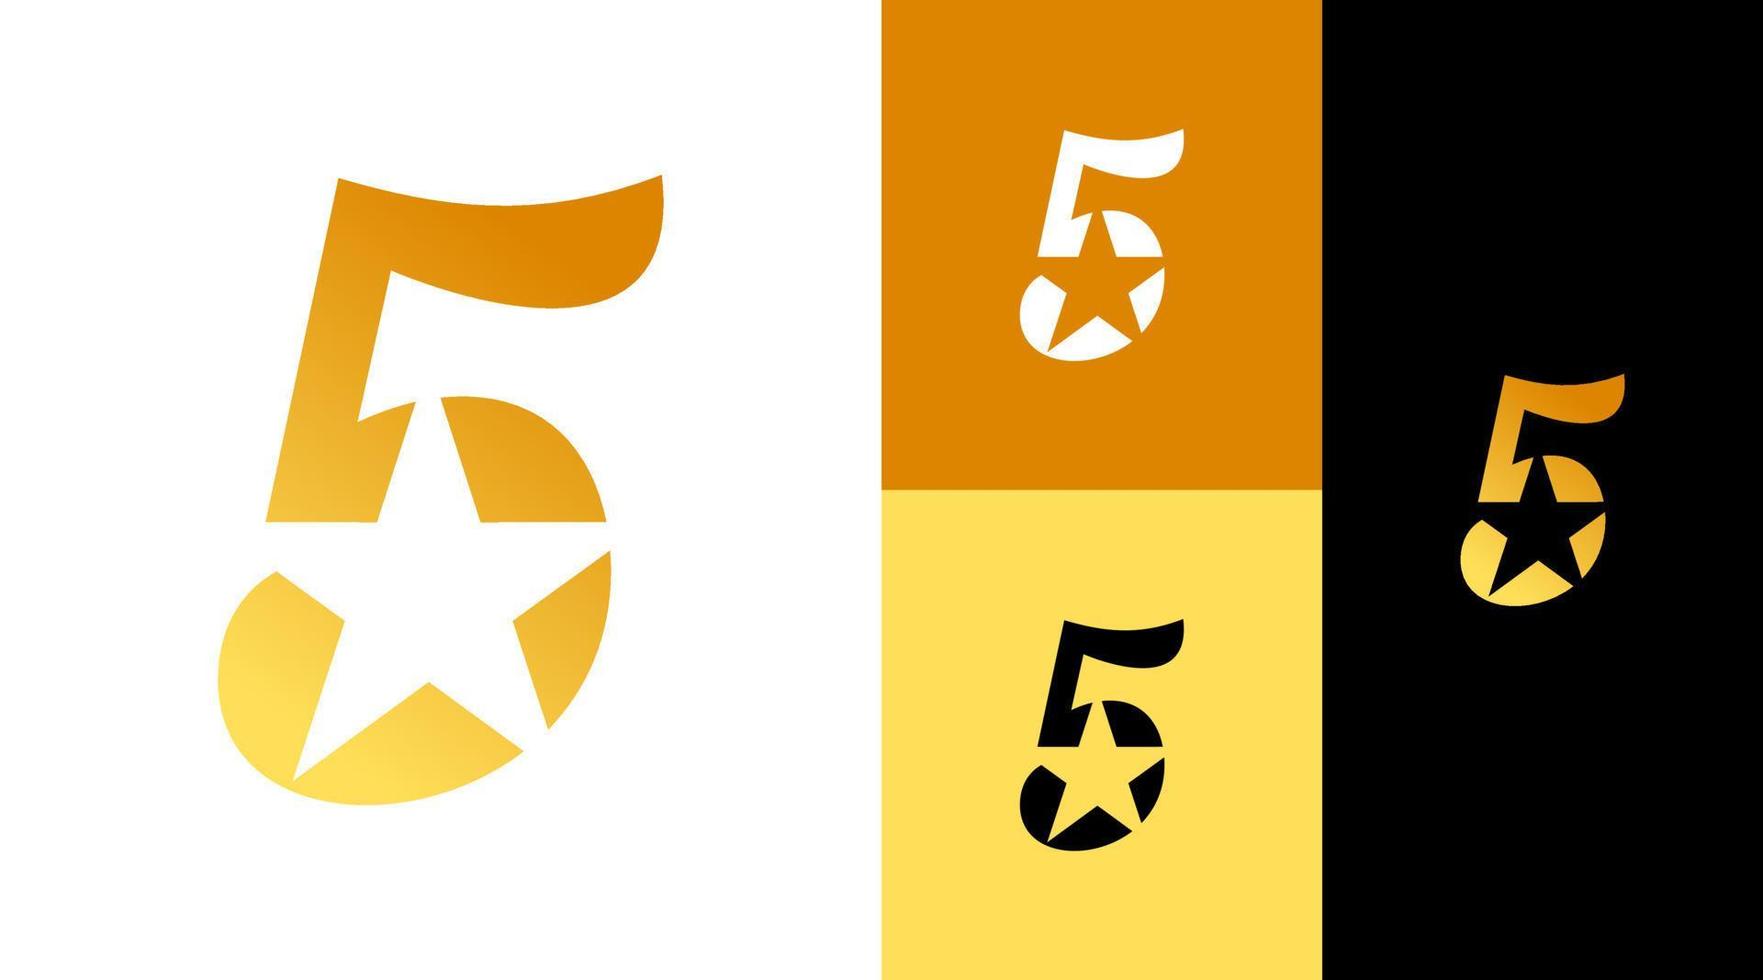 espaço negativo conceito de design de logotipo dourado de 5 estrelas vetor